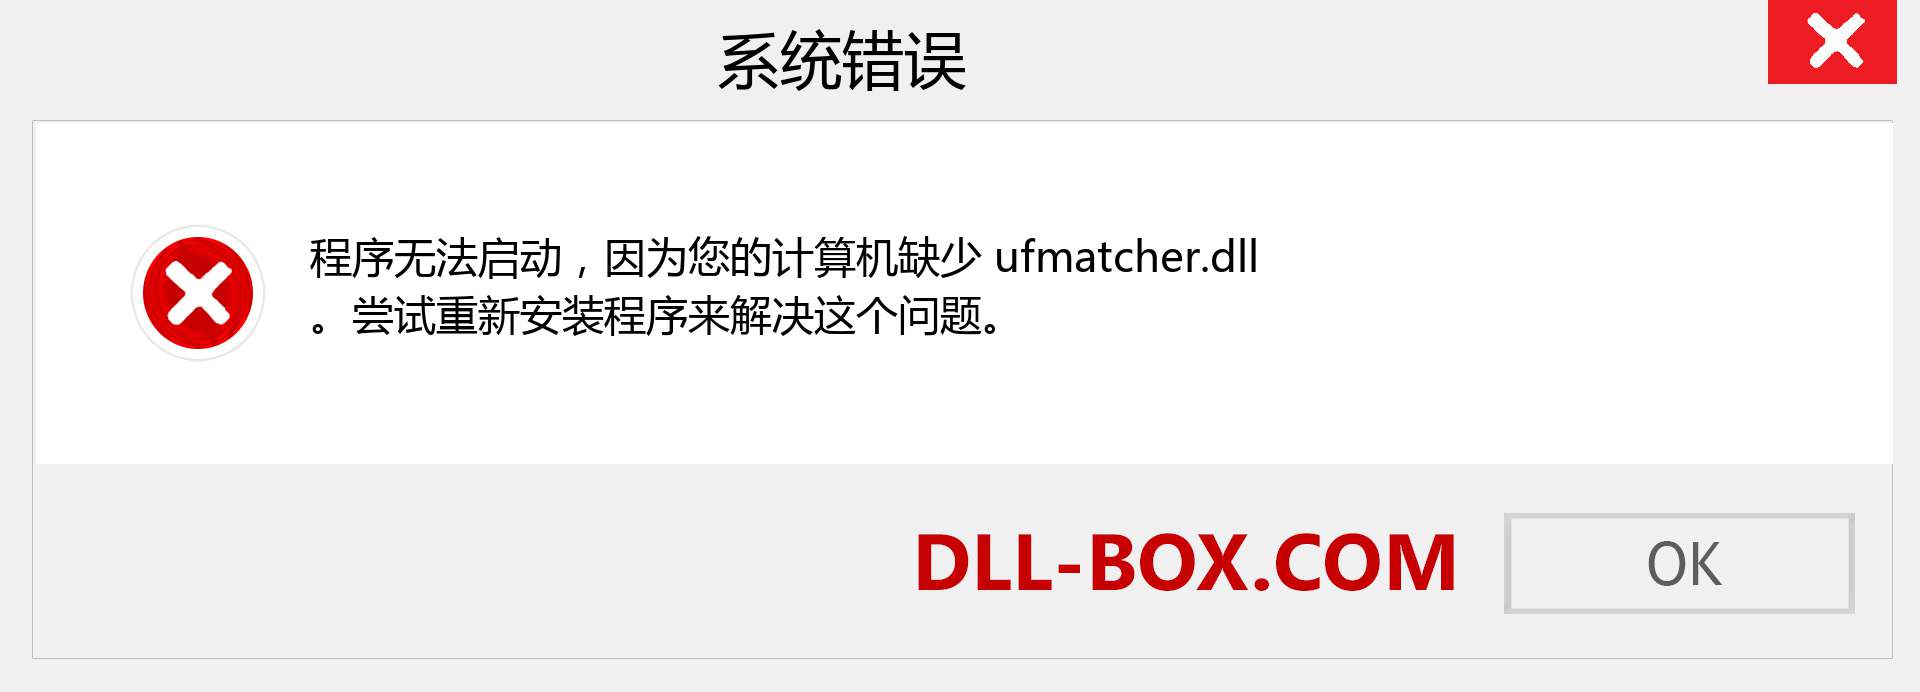 ufmatcher.dll 文件丢失？。 适用于 Windows 7、8、10 的下载 - 修复 Windows、照片、图像上的 ufmatcher dll 丢失错误